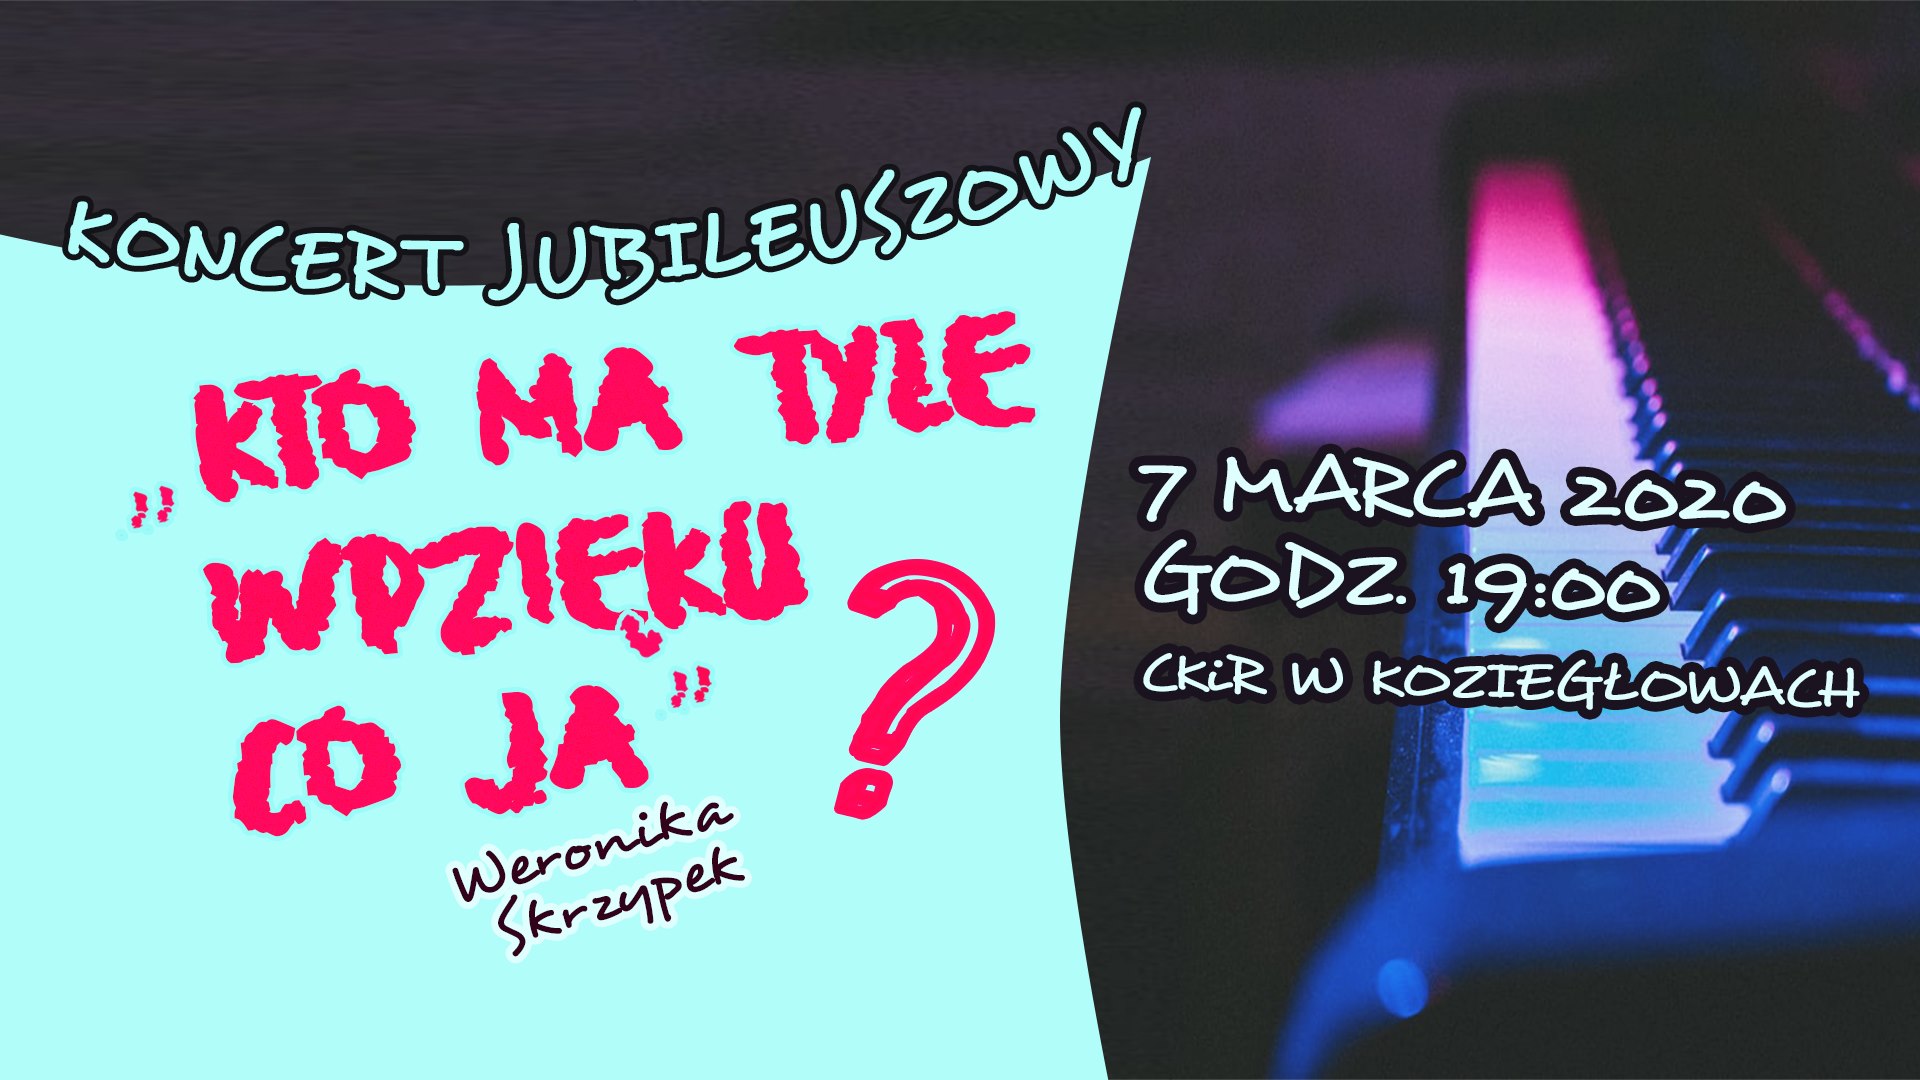 Koncert Weroniki Skrzypek "Kto ma tyle wdzięku co ja?"